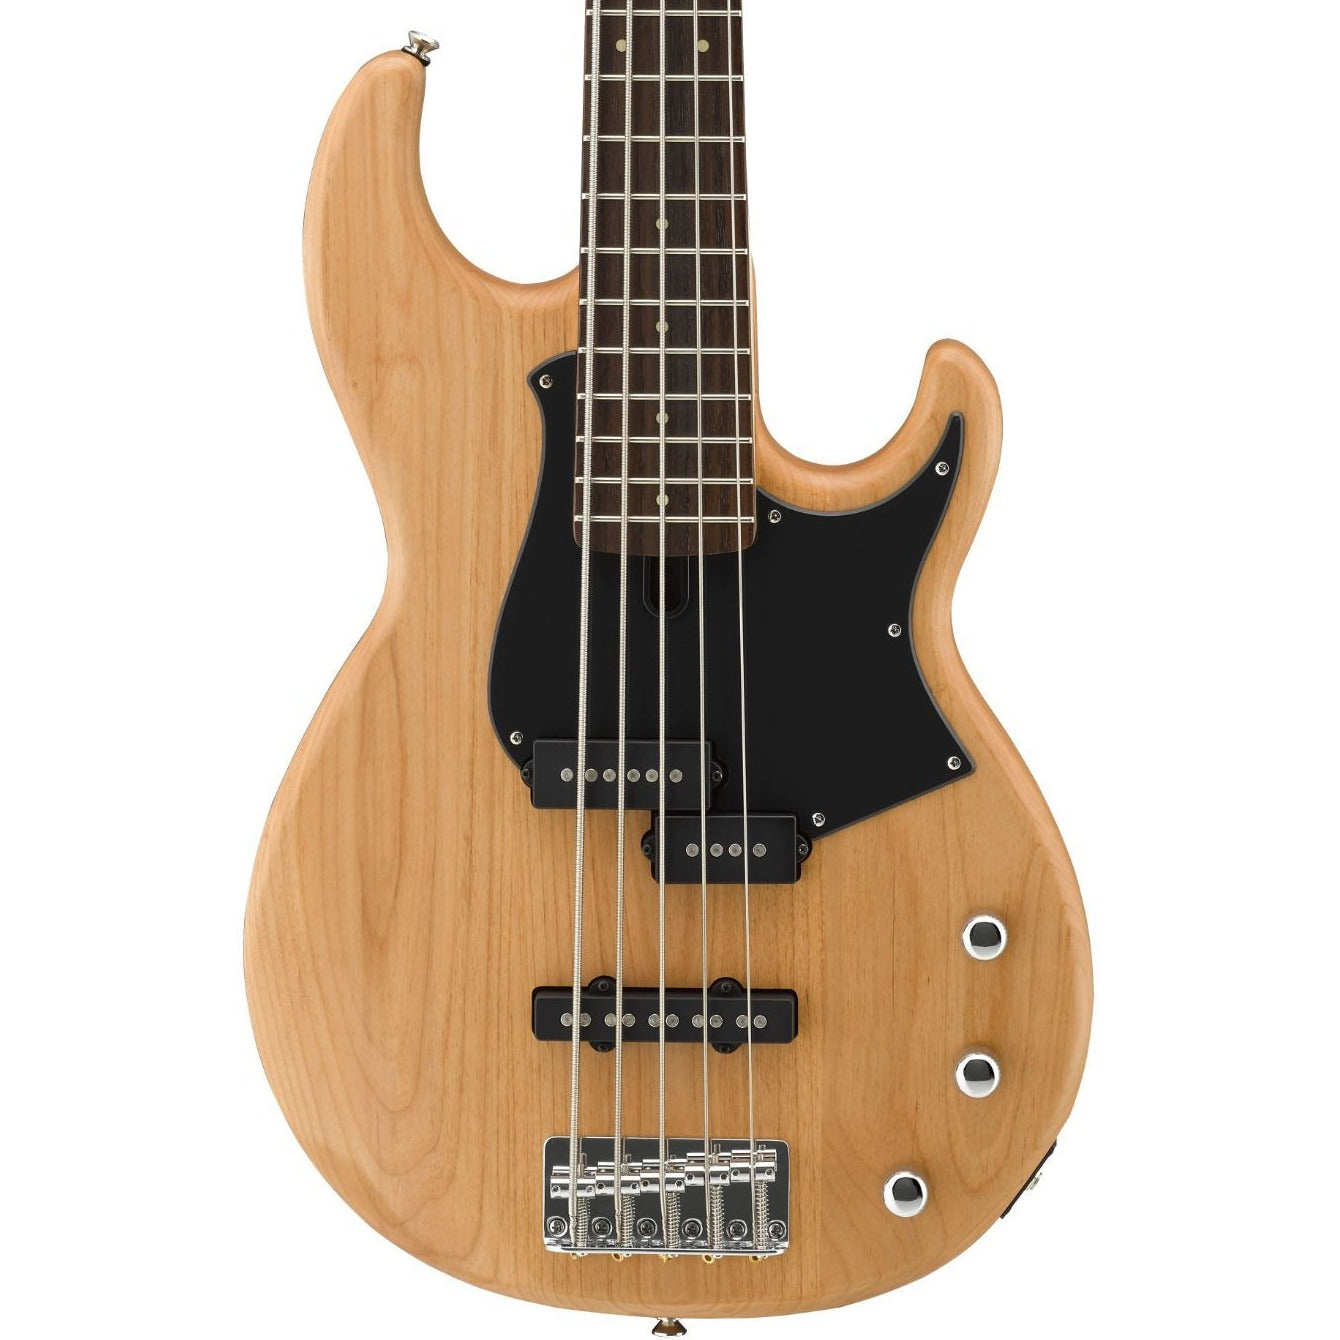 Yamaha BB235 Bass Guitar, Yellow Natural Satin